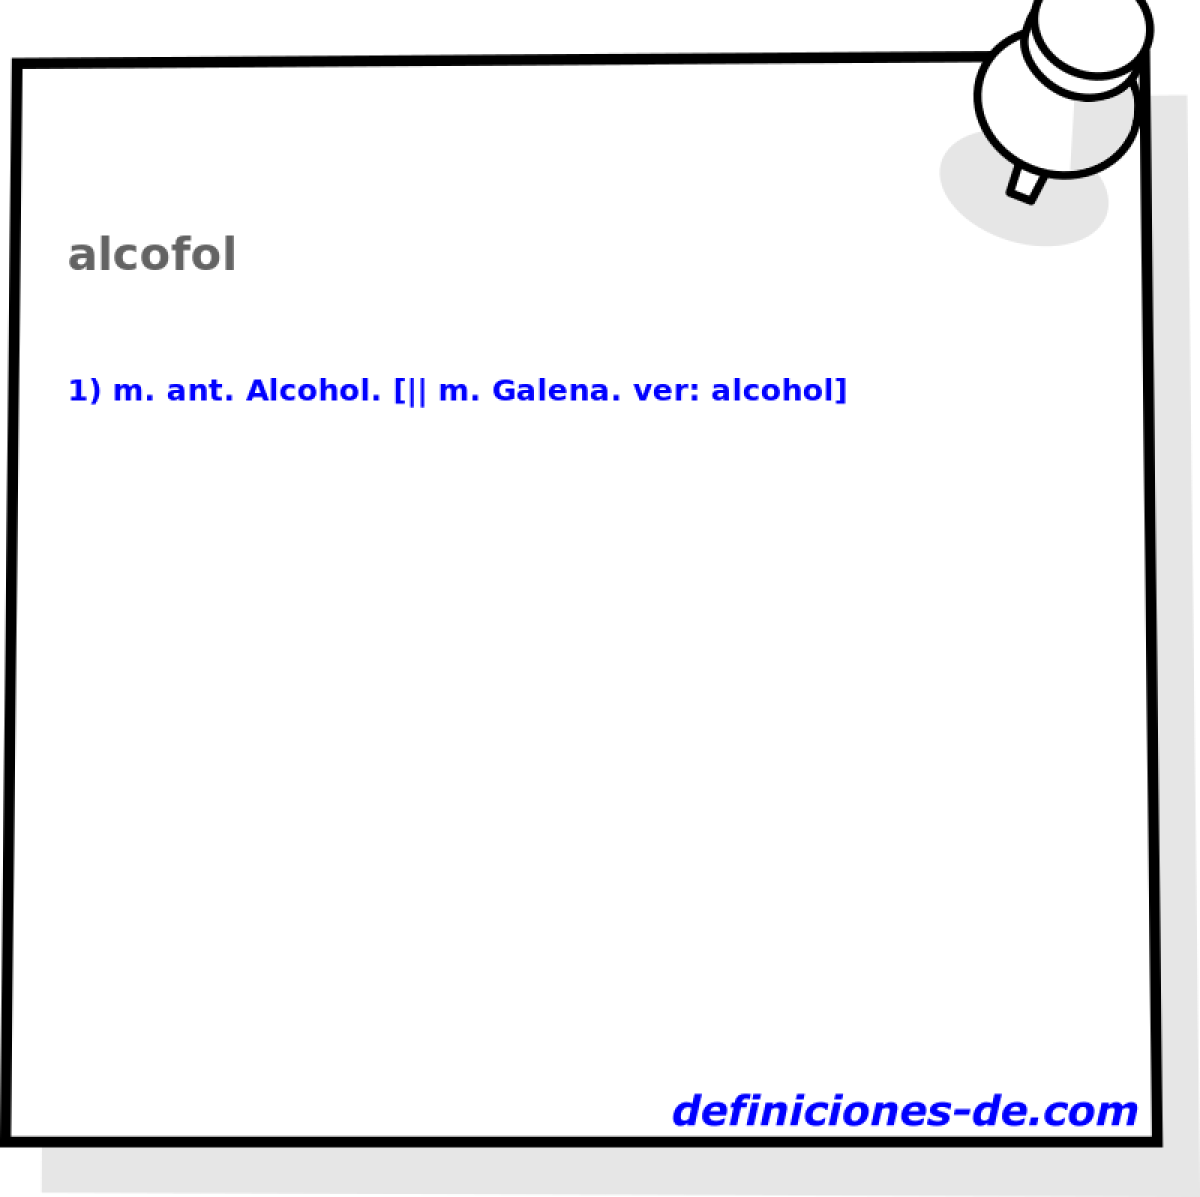 alcofol 